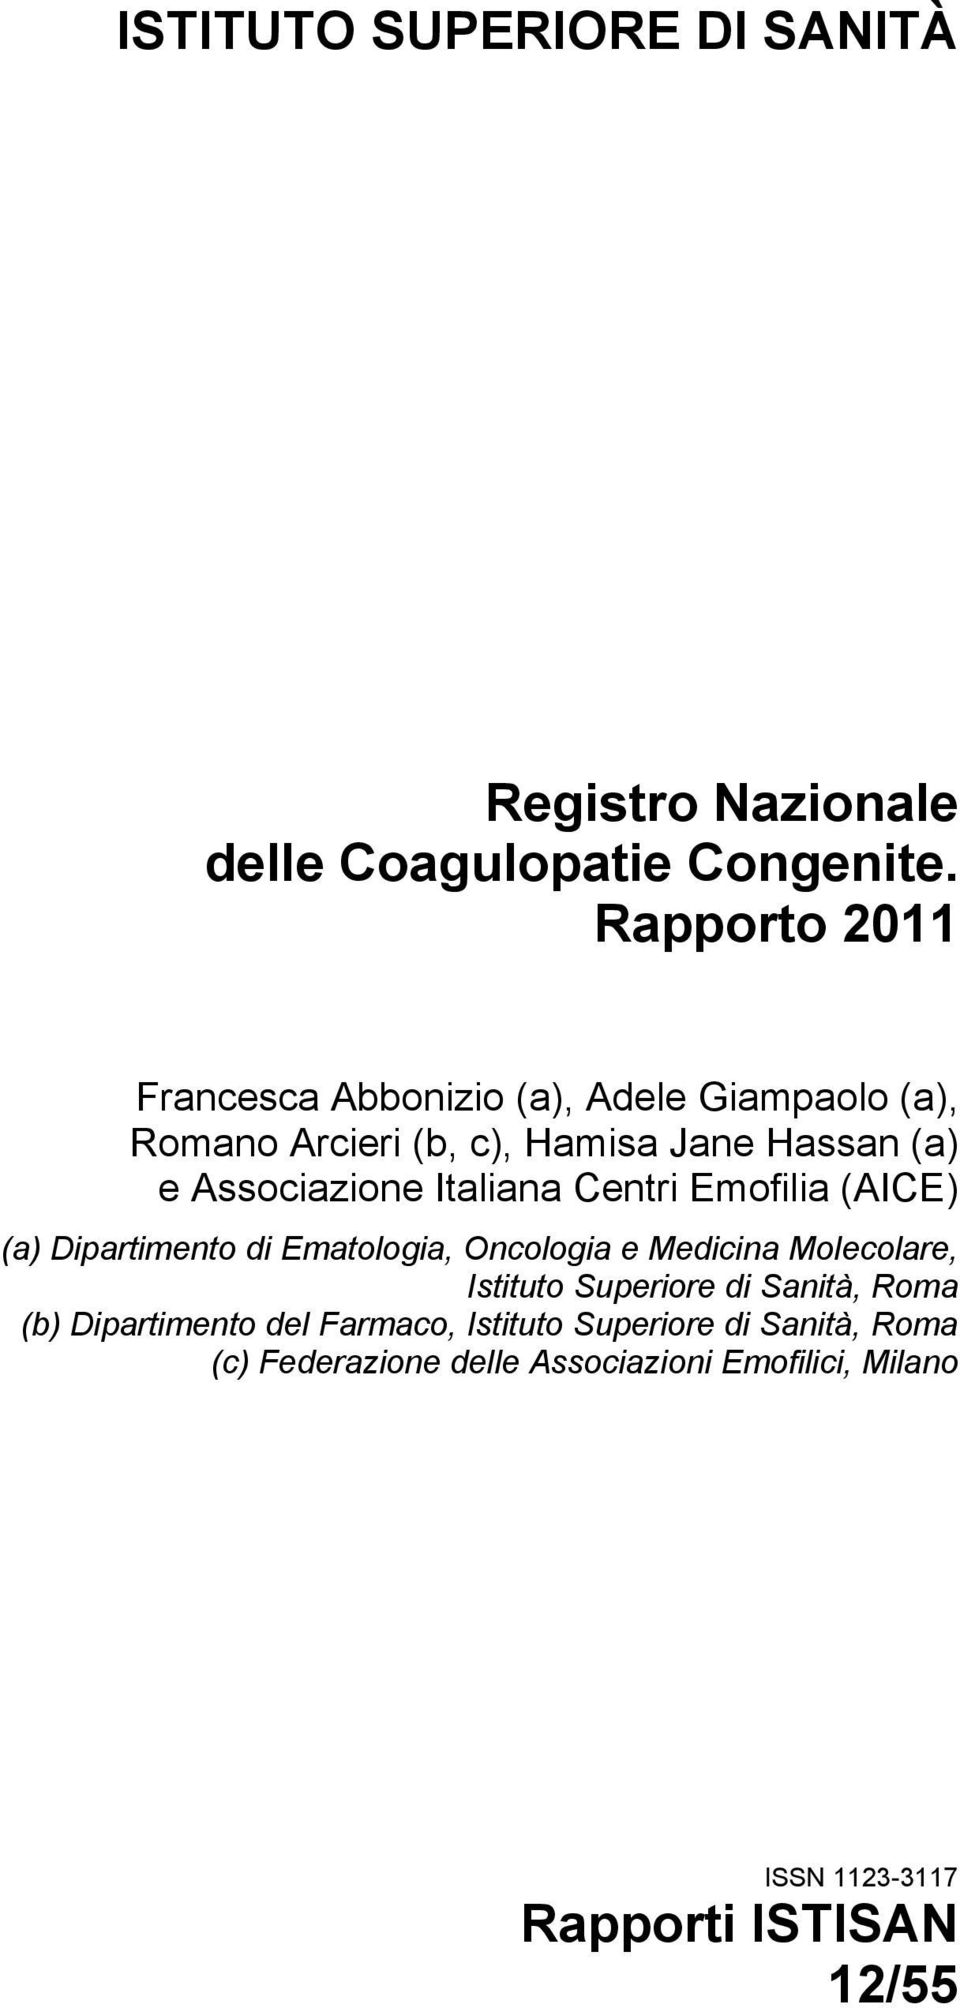 Italiana Centri Emofilia (AICE) (a) Dipartimento di Ematologia, Oncologia e Medicina Molecolare, Istituto Superiore di